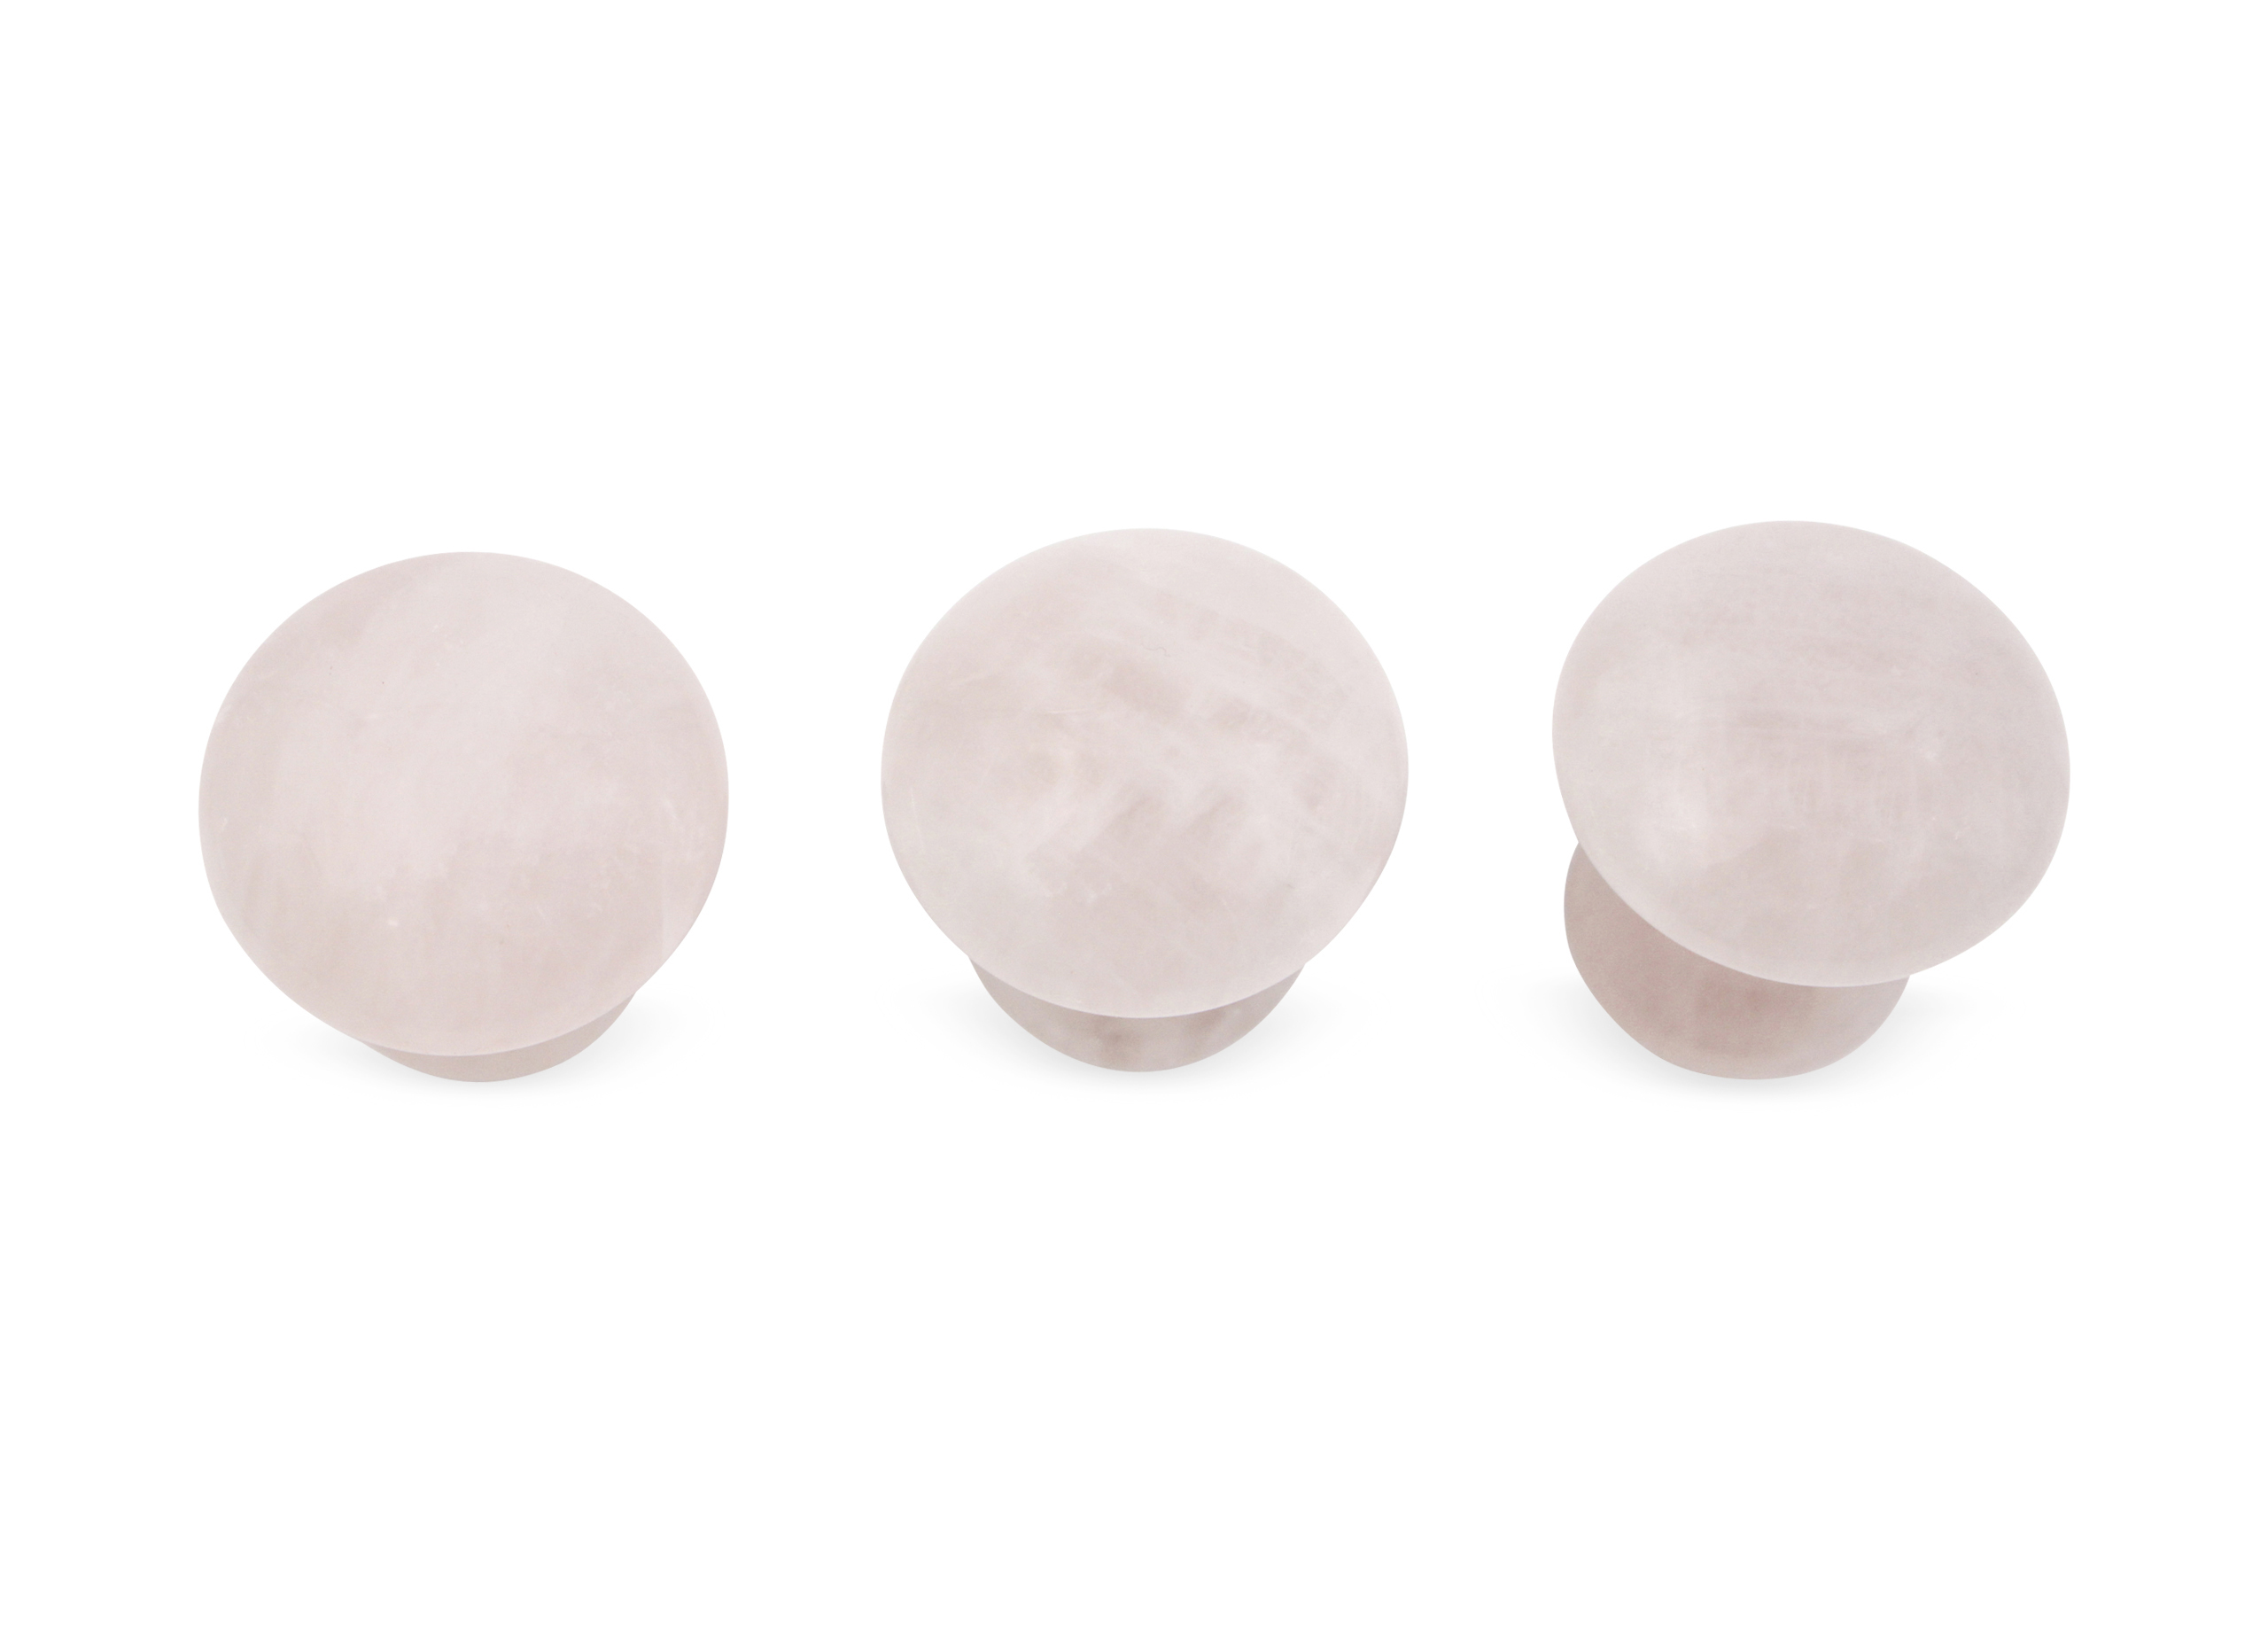 Rose quartz polished mushroom for massage (s) - Crystal Dreams